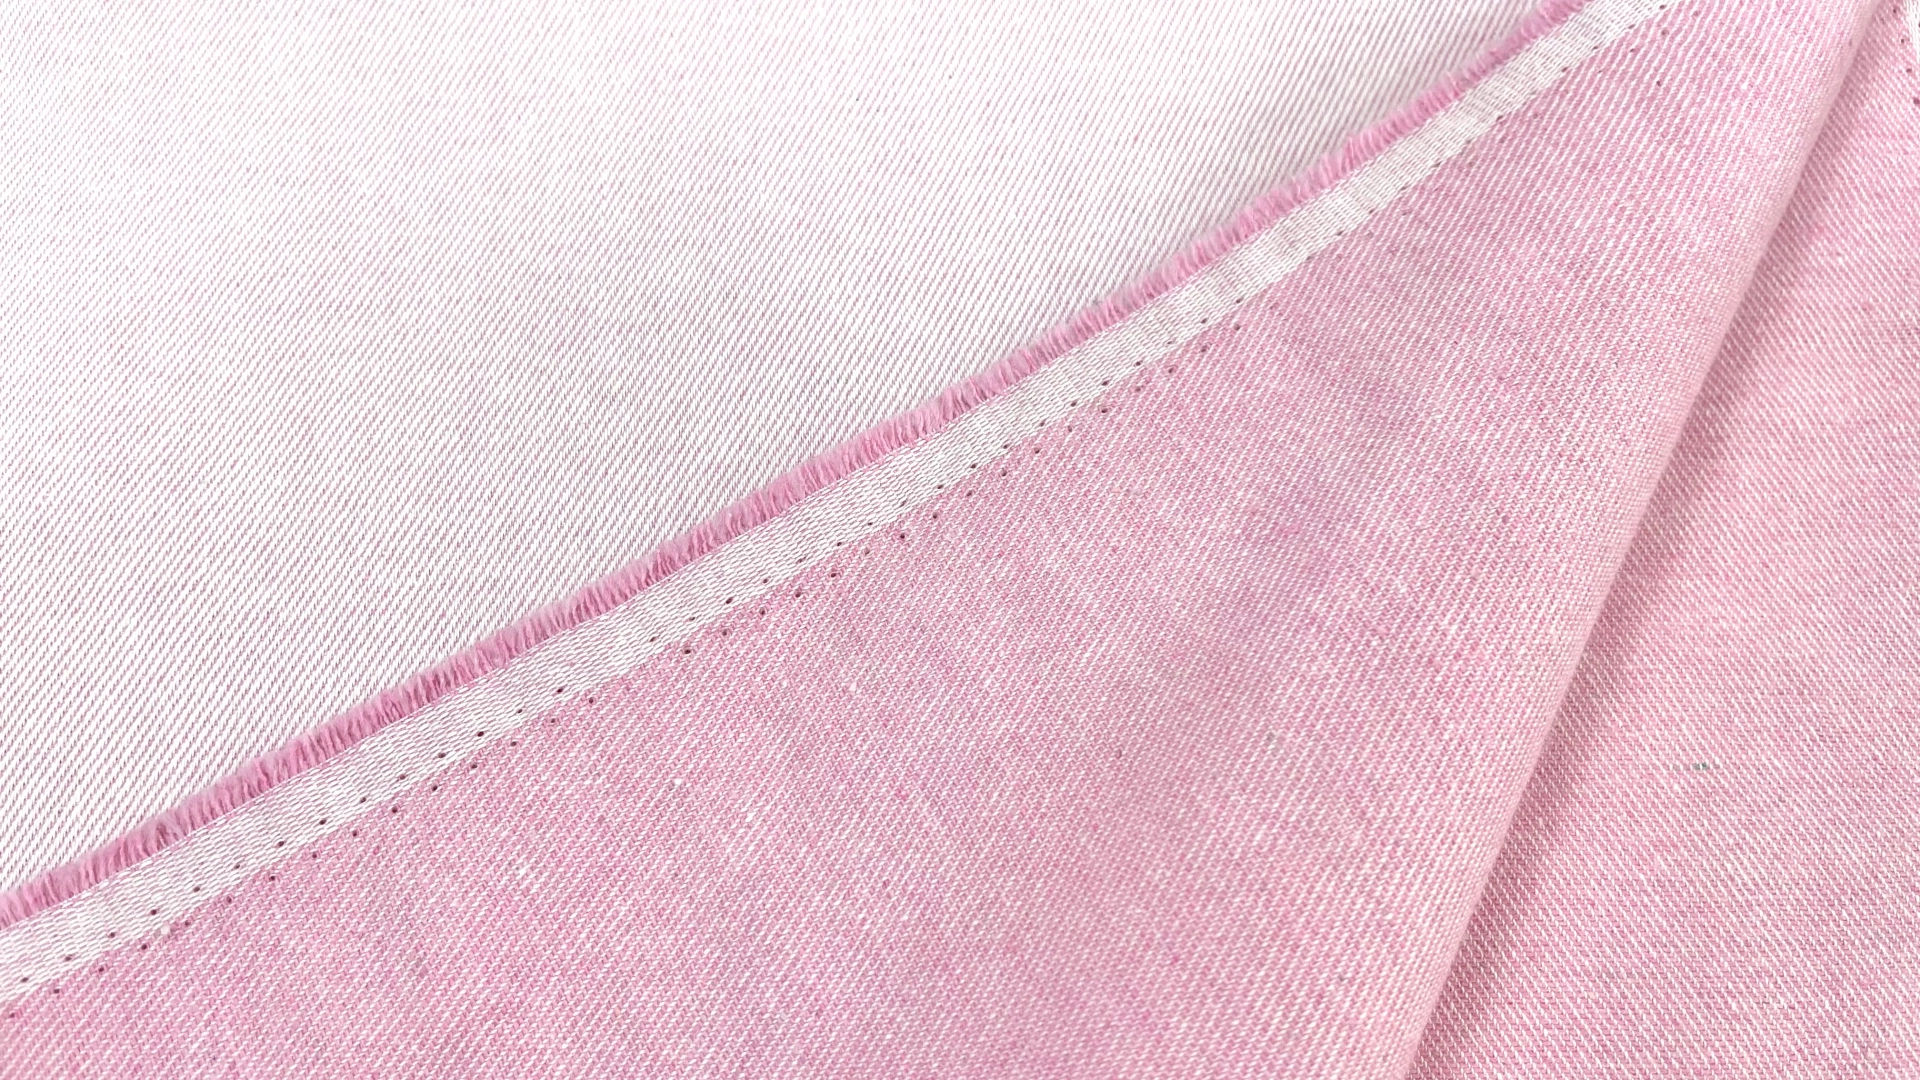 Двусторонний джинс с выраженным рубчиком розового цвета. Подойдет для пошива летних джинс, куртки или юбки.